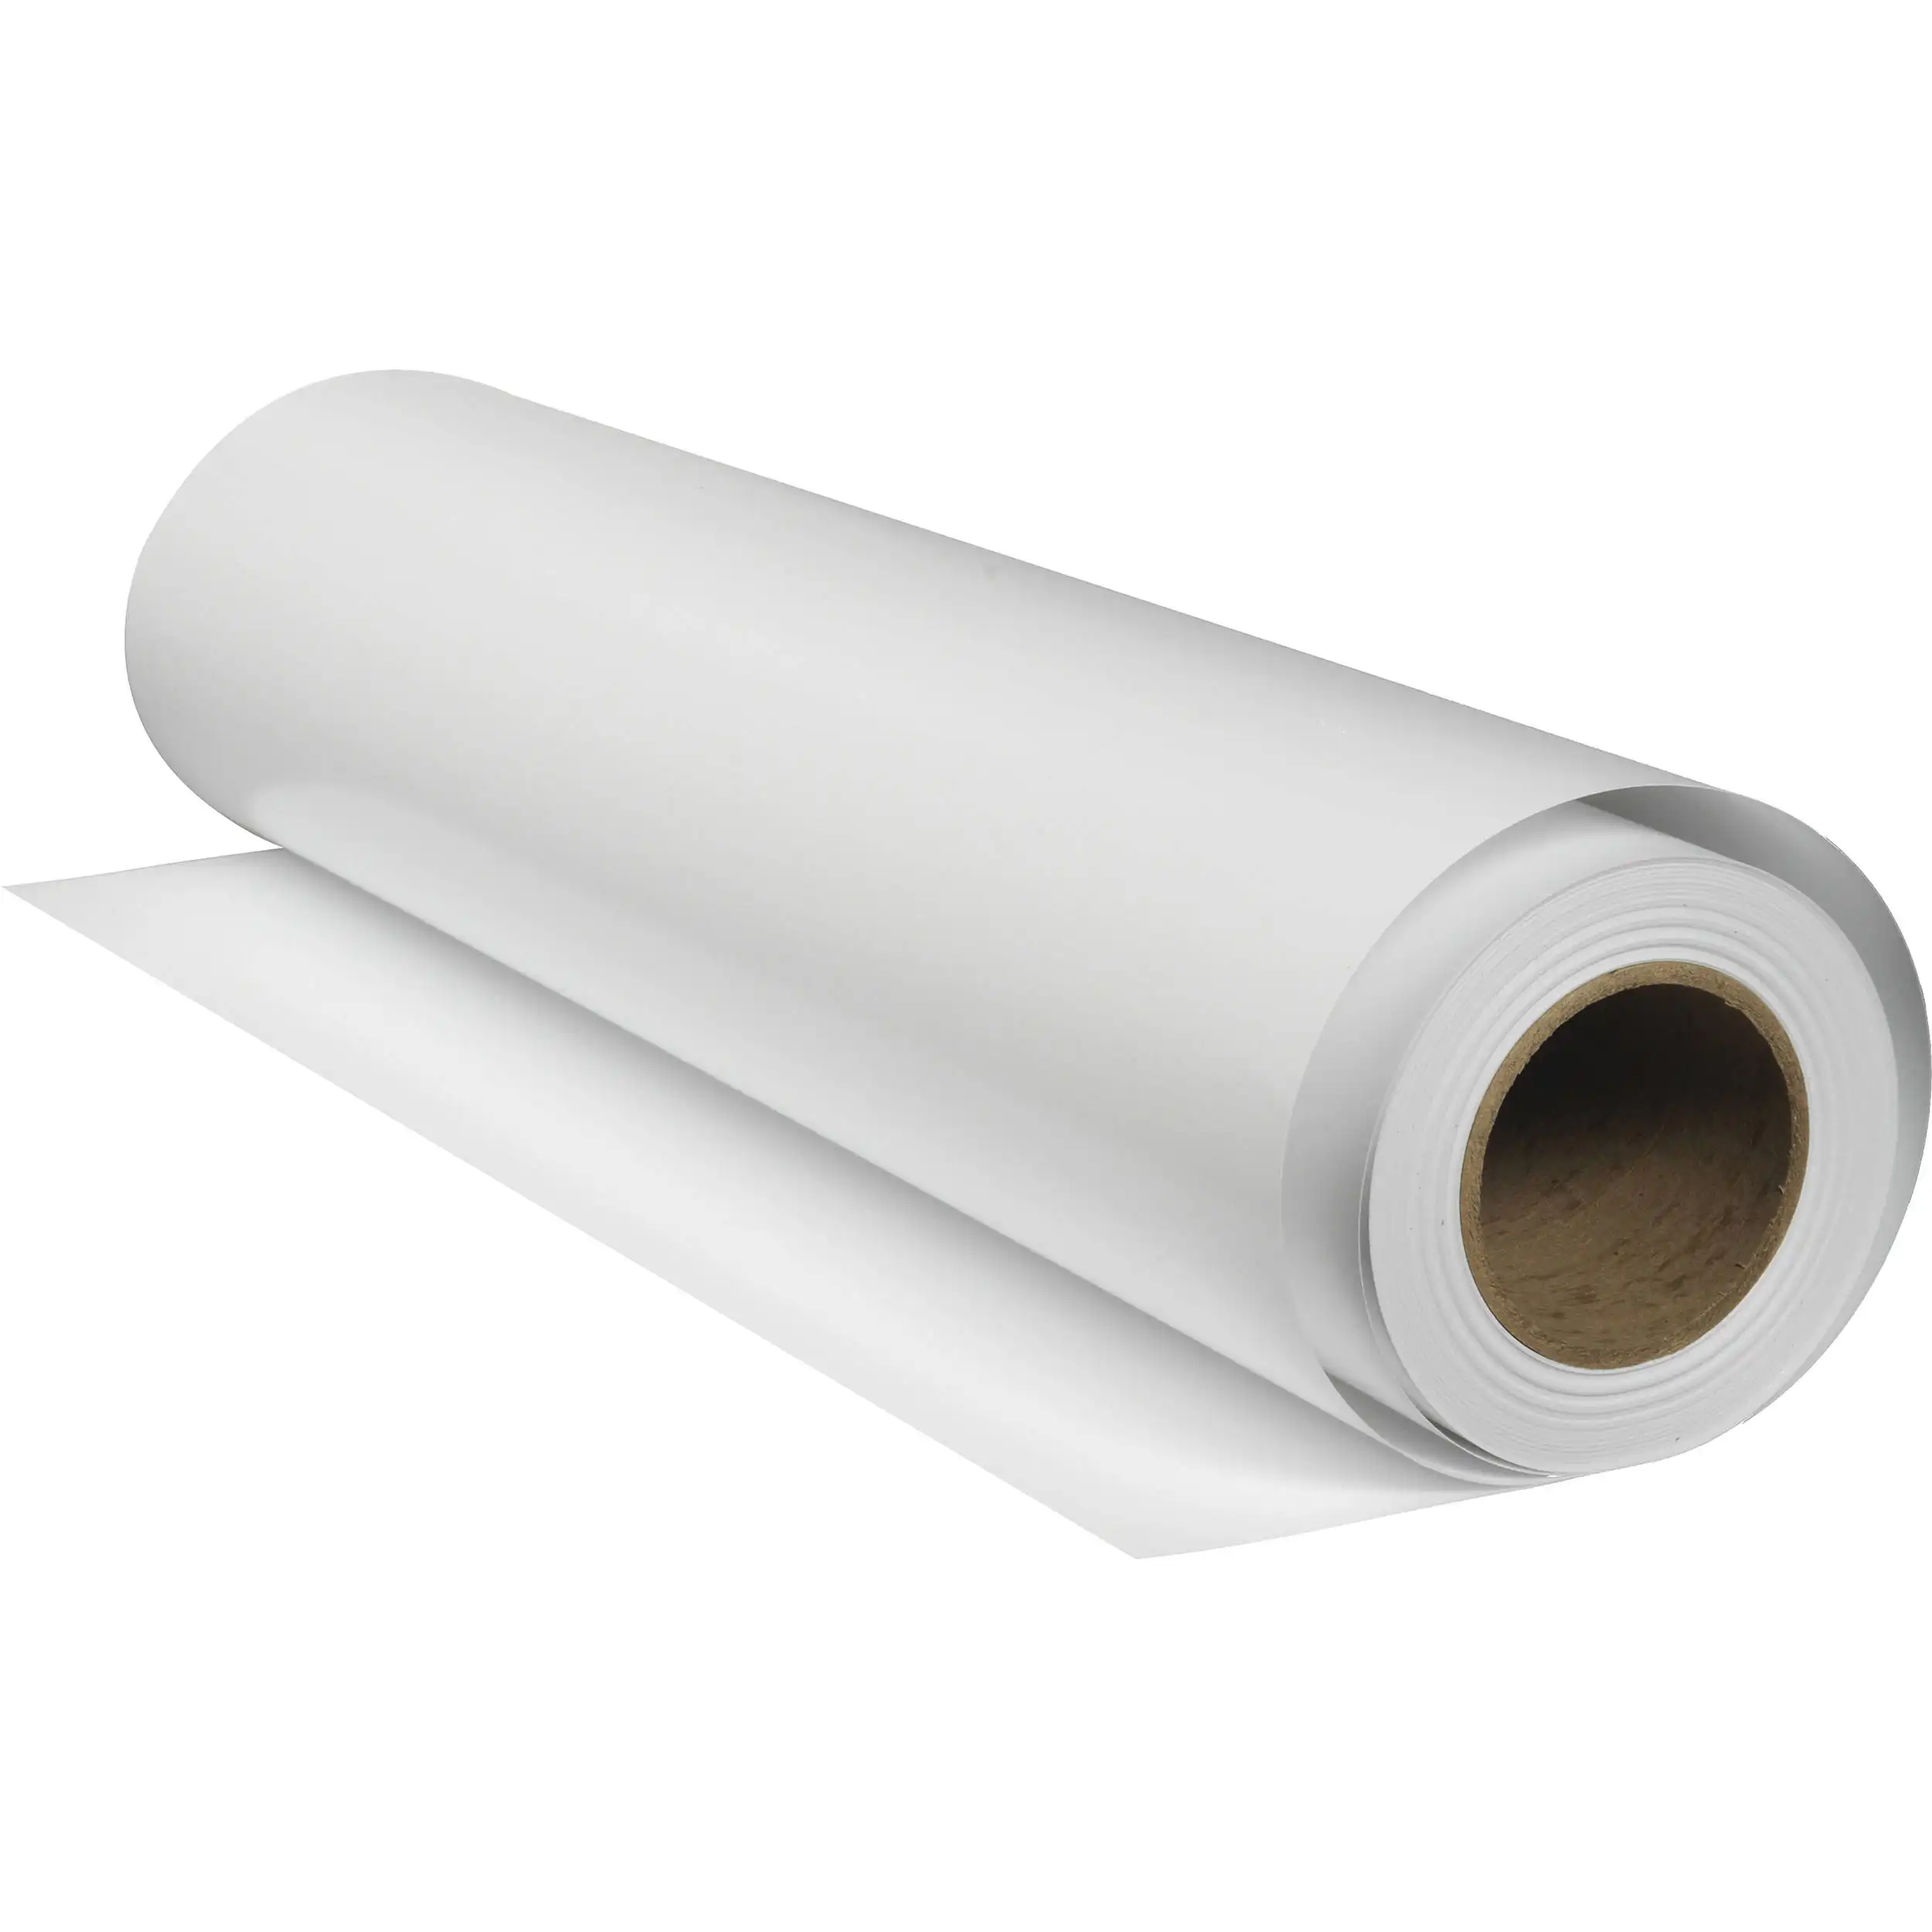 Coreano capa de 3 de alta calidad puro tinte blanco de transferencia de calor de sublimación rollo de papel